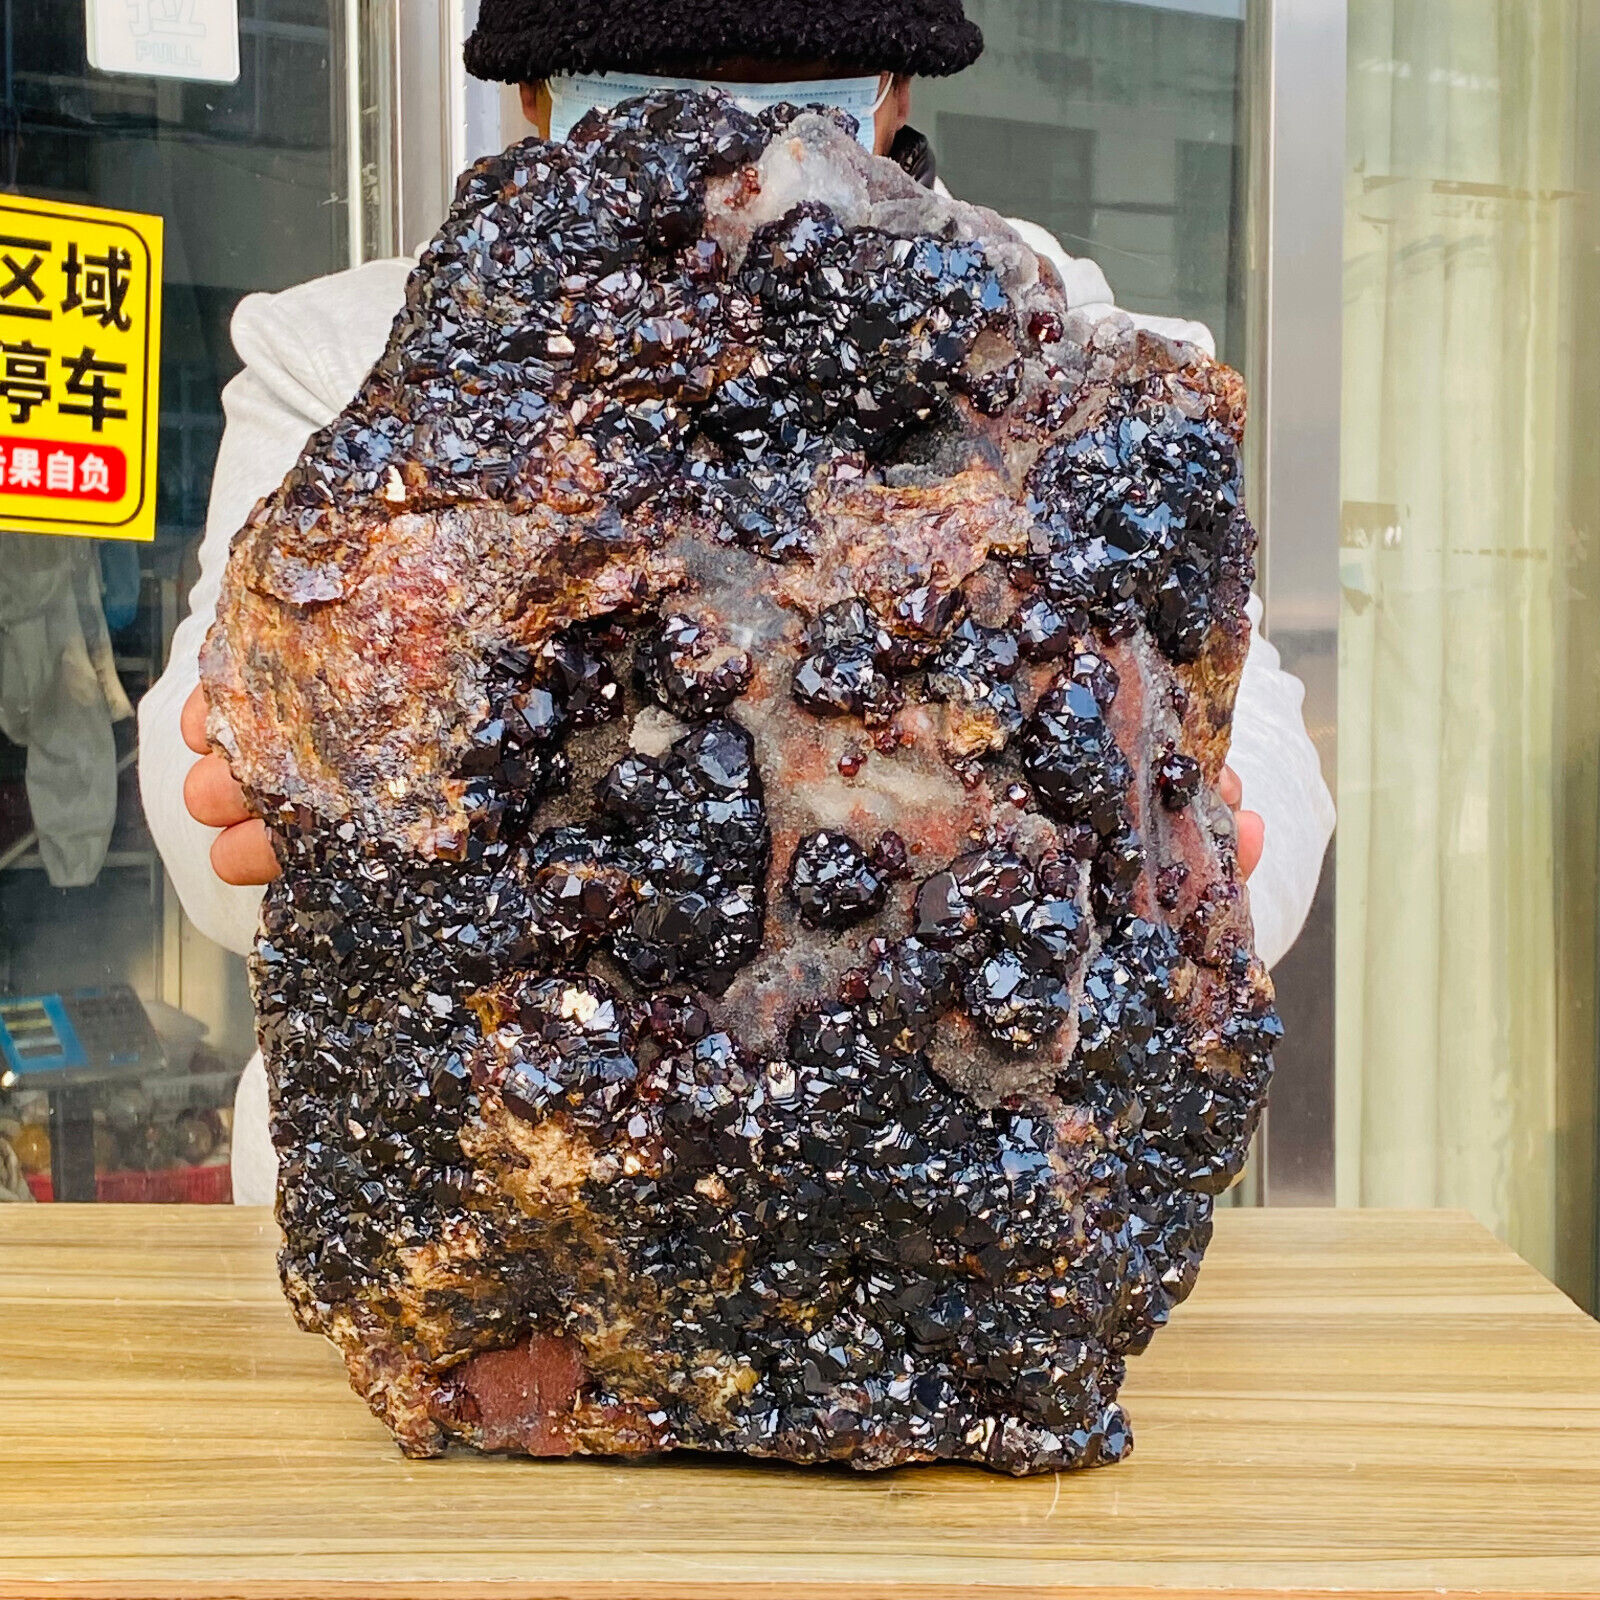 60.85LB Huge Rare Natural Large Particles Garnet Ruby Crystal Mineral Specimen